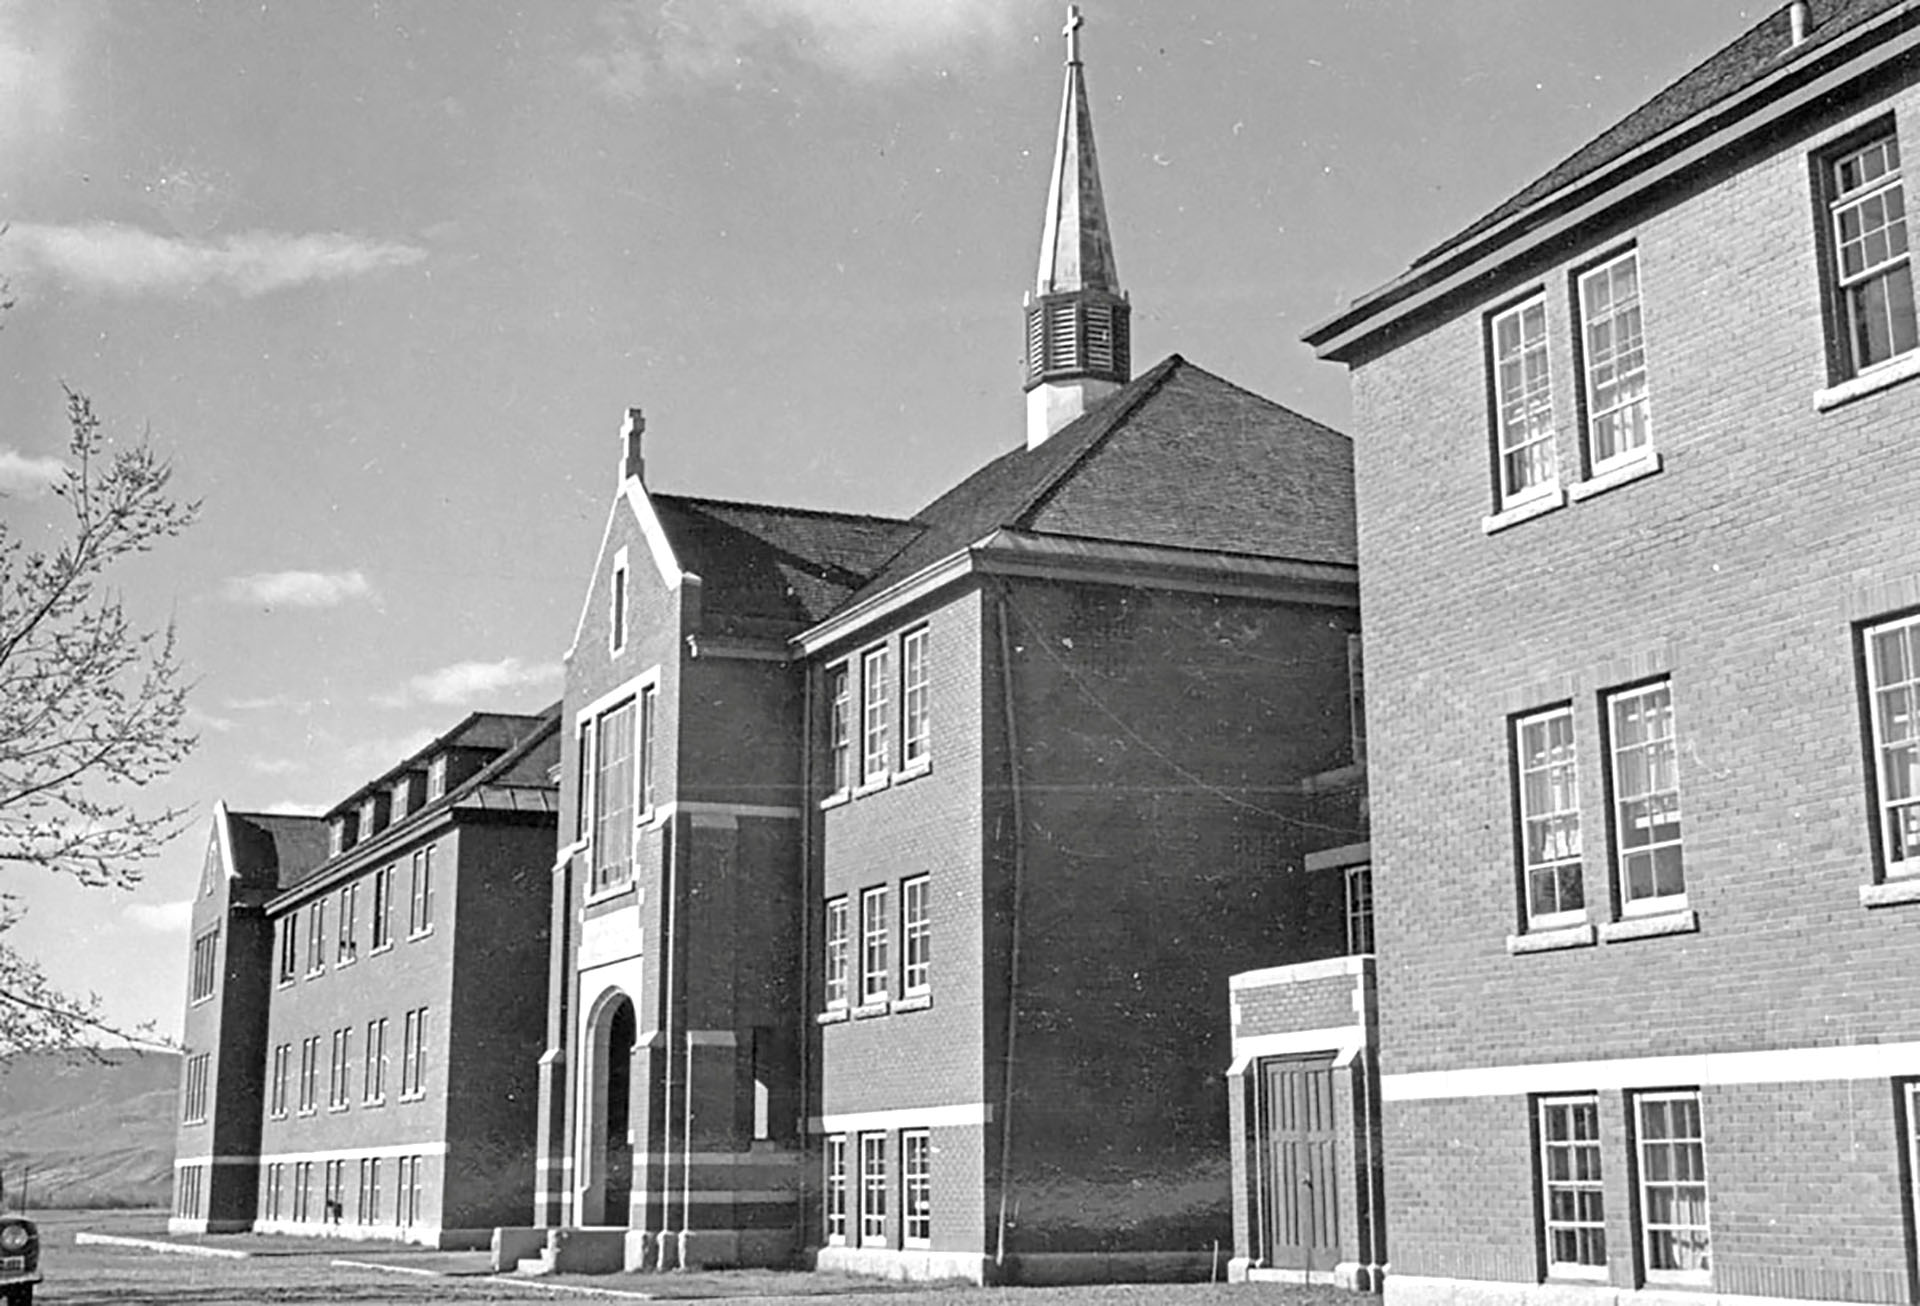 El edificio administrativo principal de la Escuela Residencial India de Kamloops se ve en Kamloops, Columbia Británica, Canadá, alrededor de 1970. Biblioteca y Archivos de Canadá / Folleto
